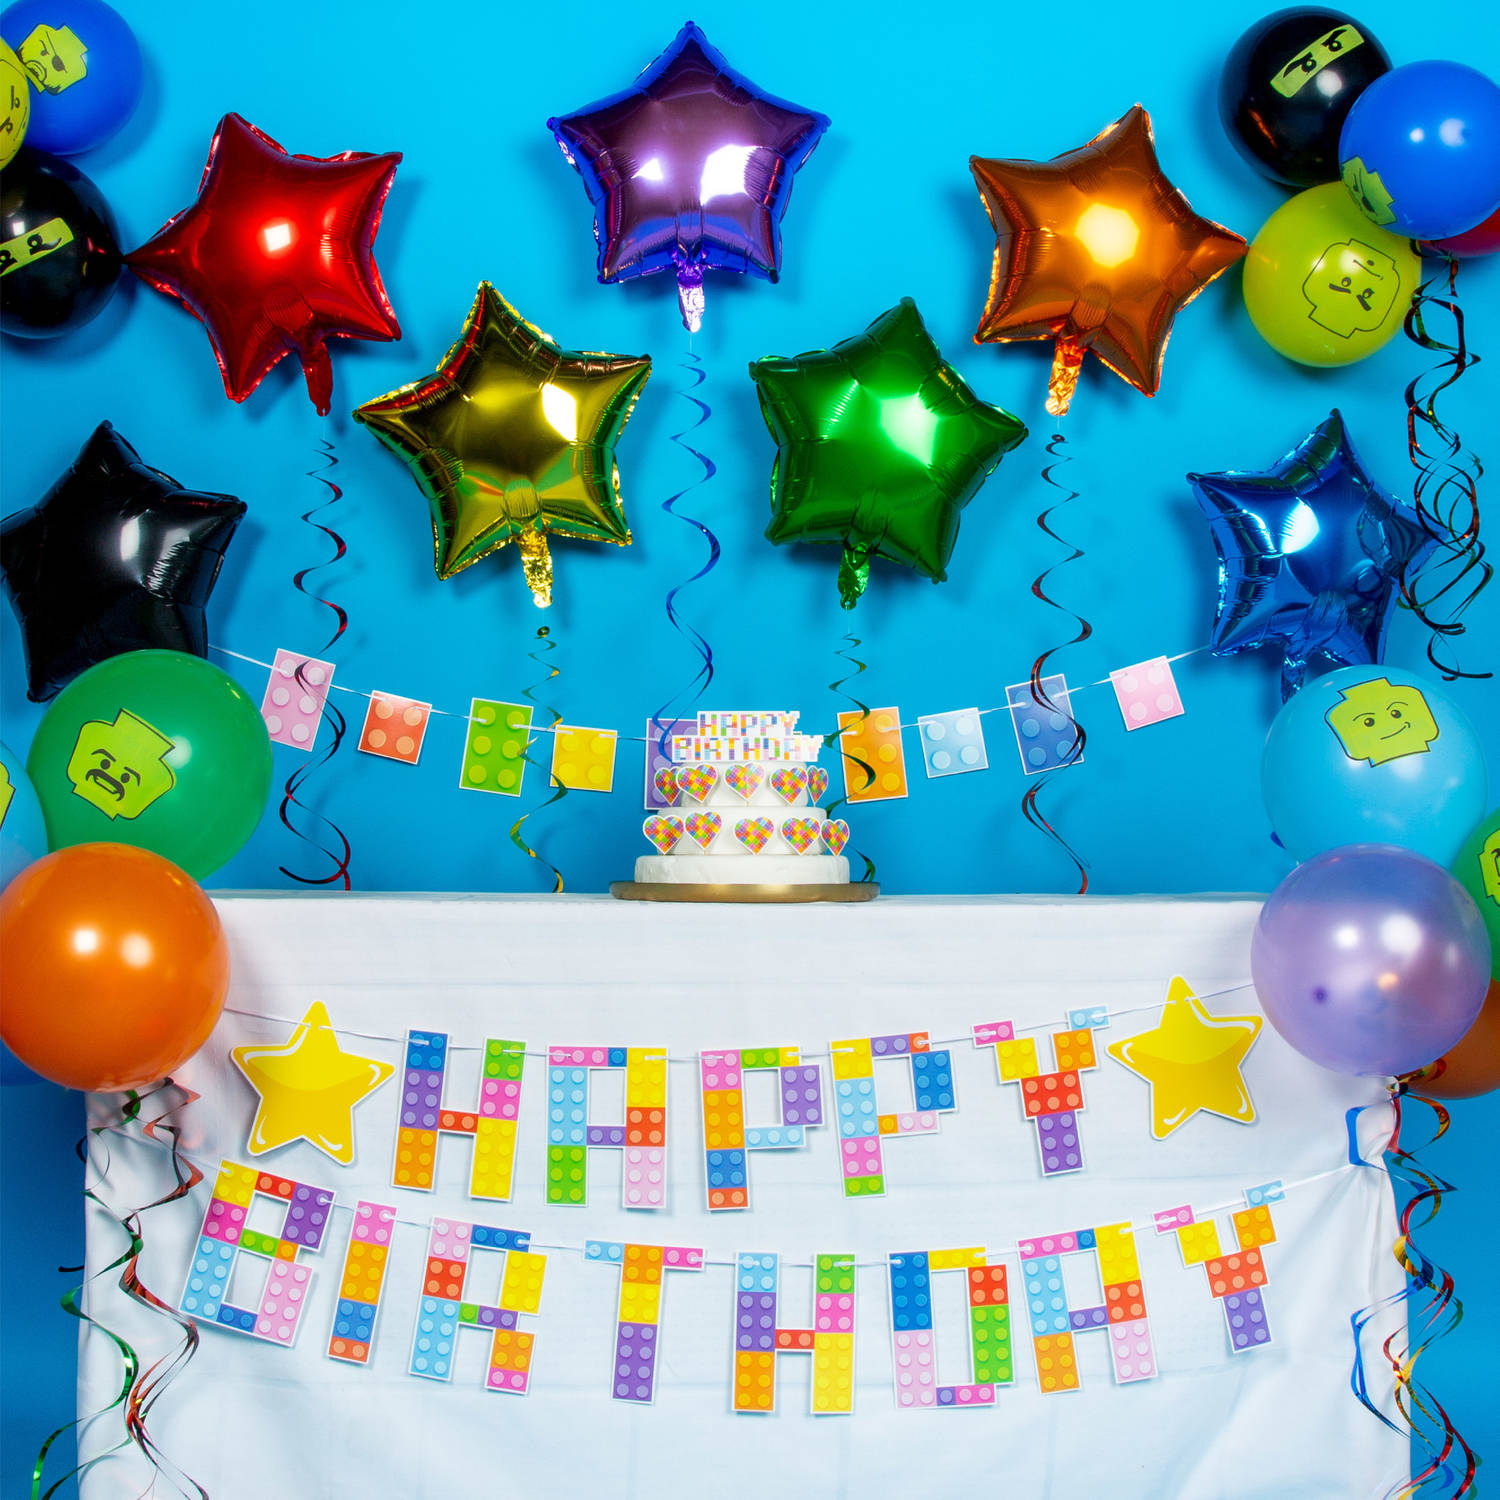 Slagschip strijd milieu Fissaly® 100 Stuks Lego Thema Feest Versiering – Kinderfeestje Decoratie – Themafeest Verjaardag – Bouwen Feestartikelen | Blokker